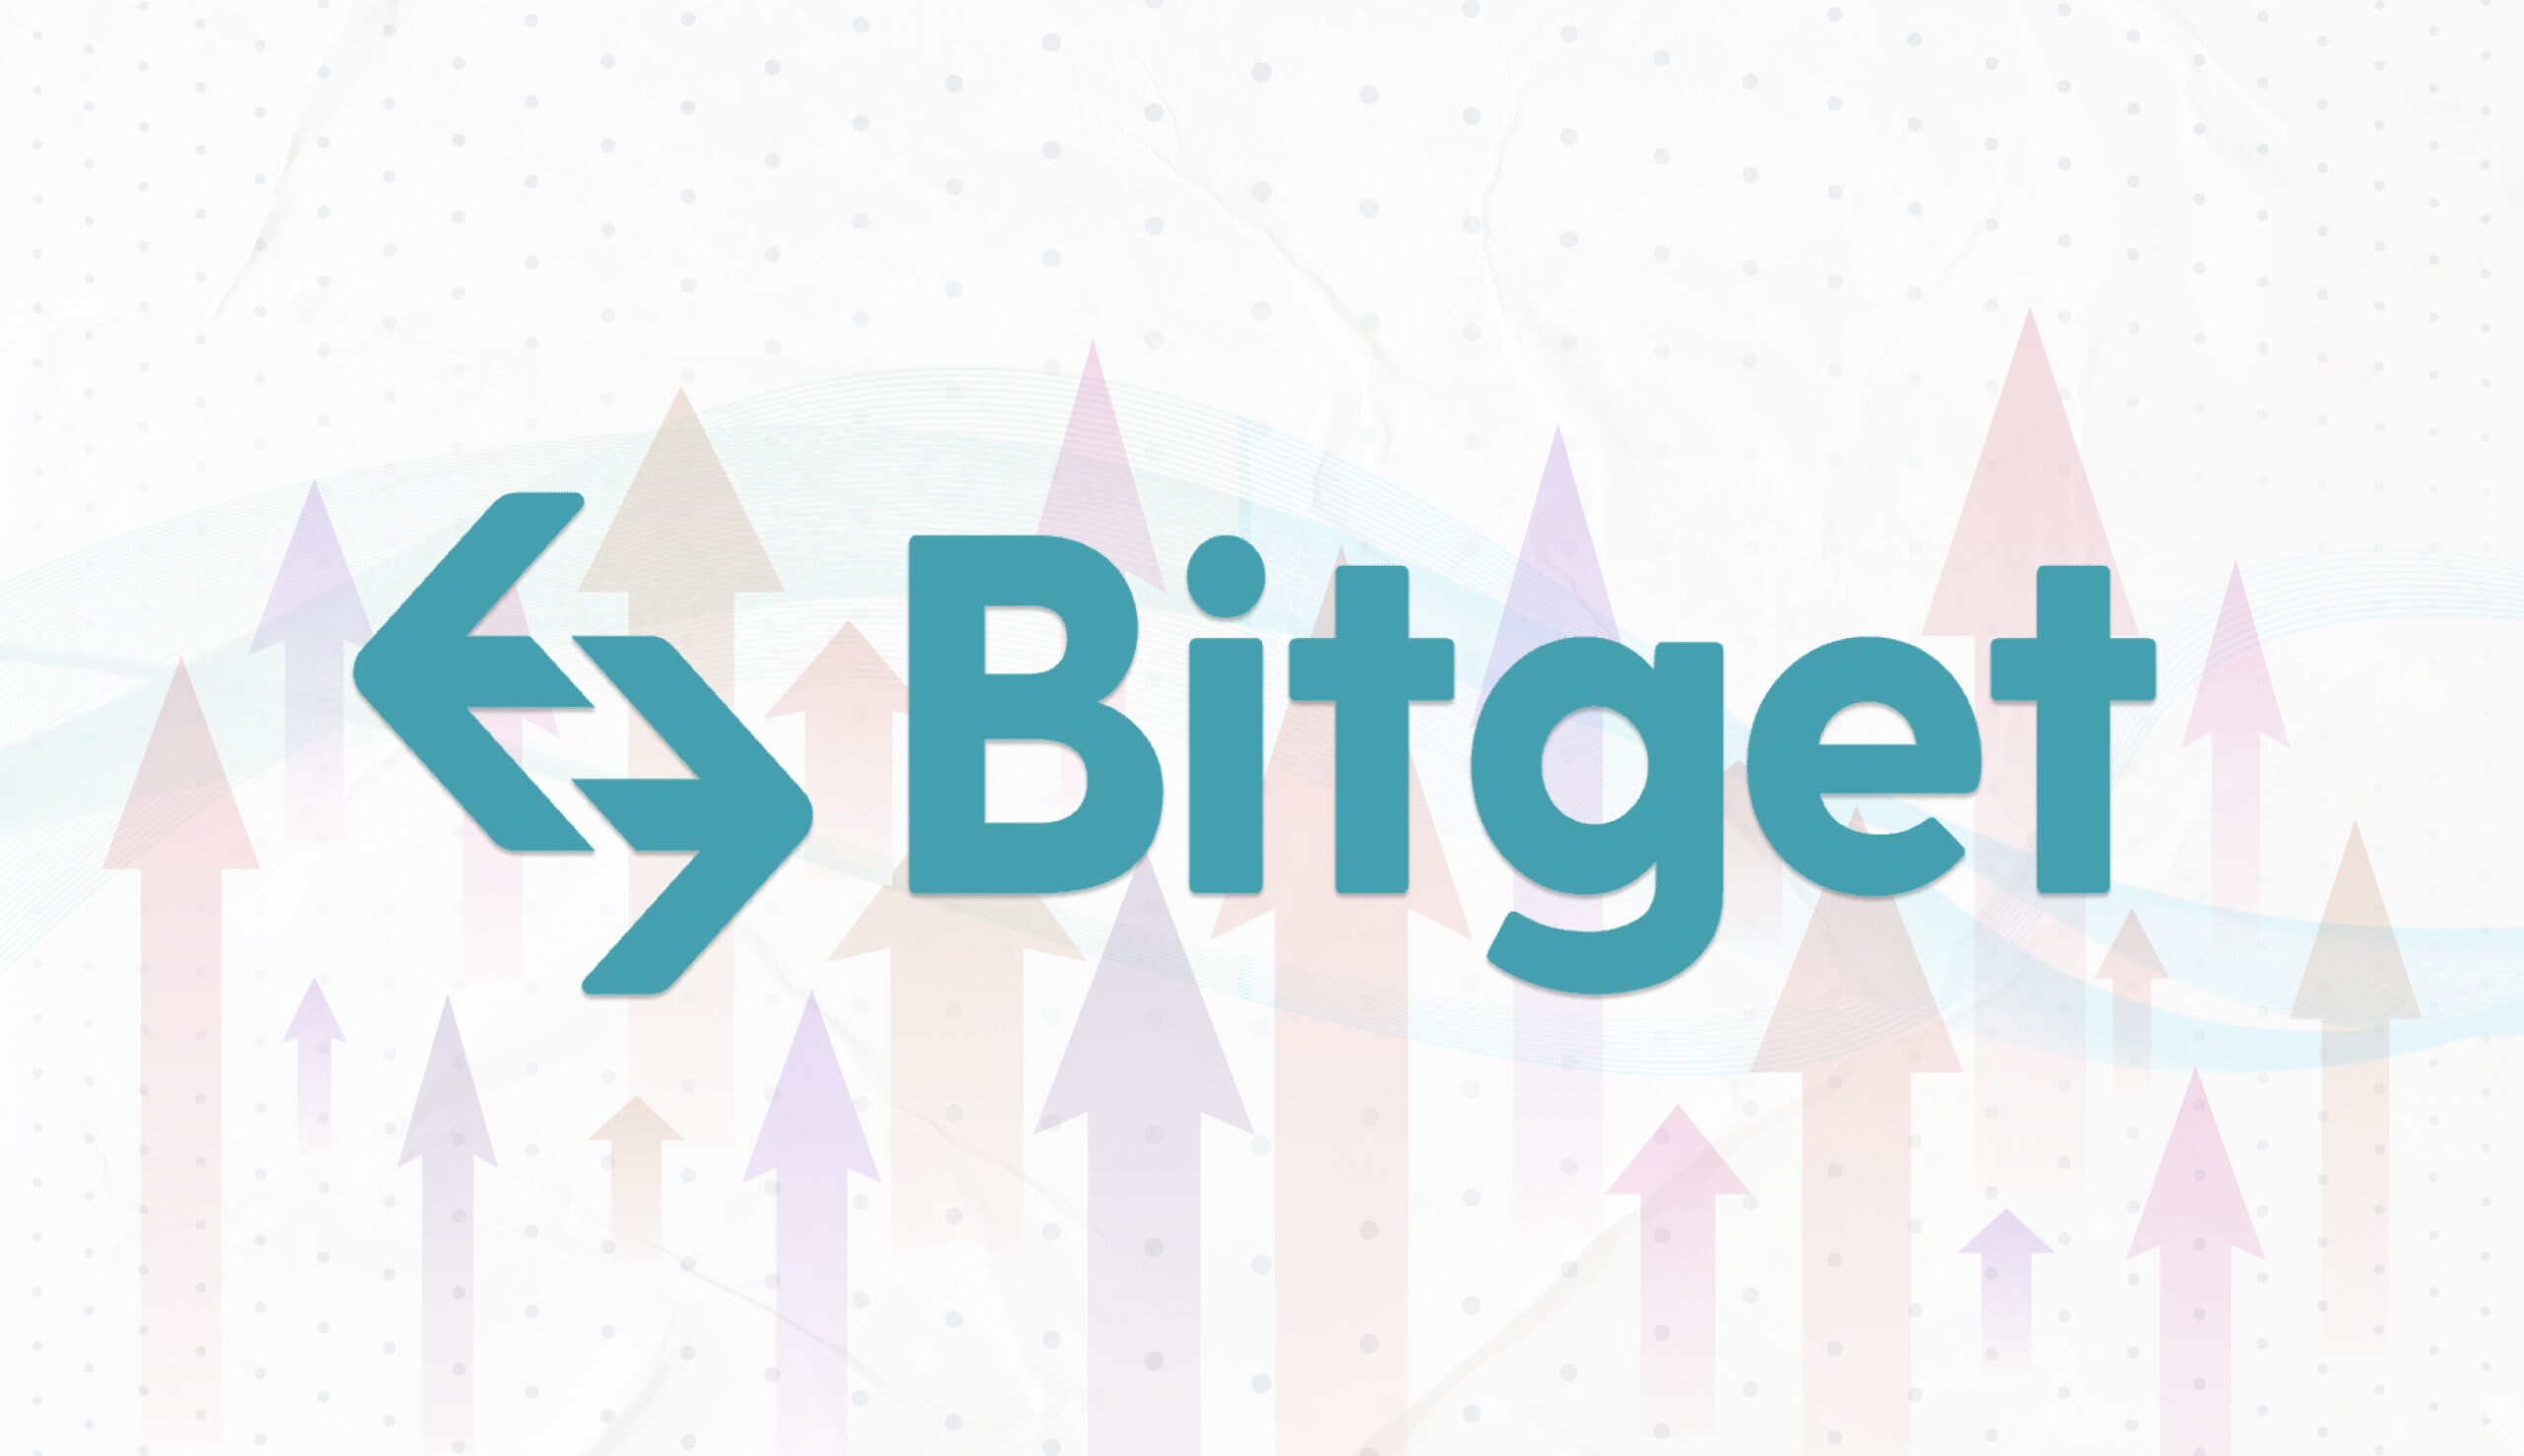 Bitget добавили новый инструмент «Strategy Plaza»: подписка на лучших стратегов с автотрейдингом. Заглавный коллаж новости.